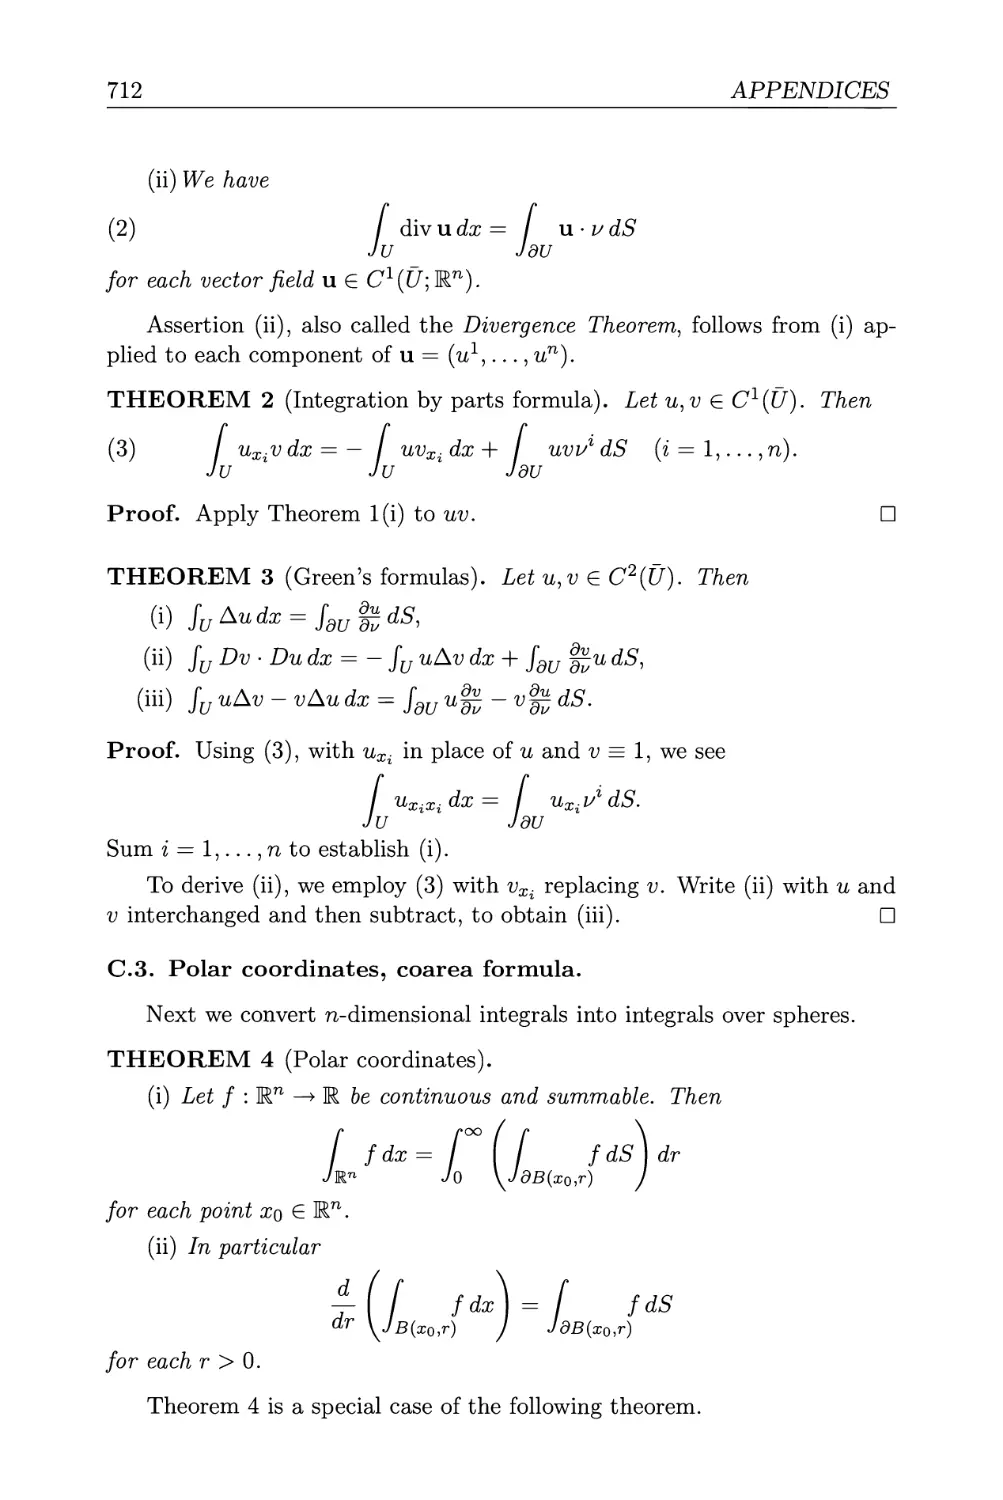 C.3. Polar coordinates, coarea formula